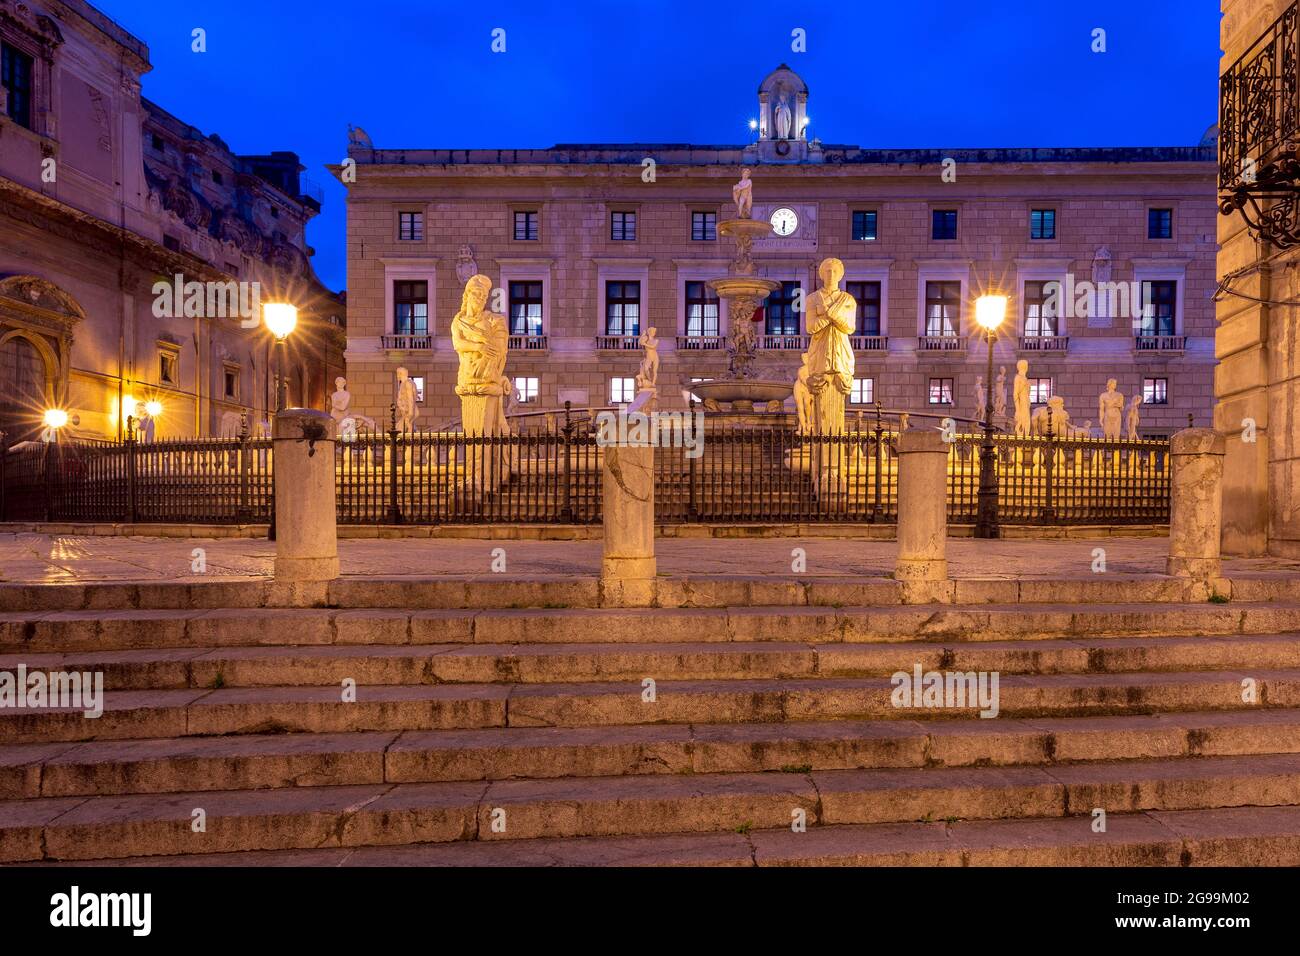 La célèbre fontaine de la honte sur la place de Pretoria. Palerme. Sicile. Italie. Banque D'Images